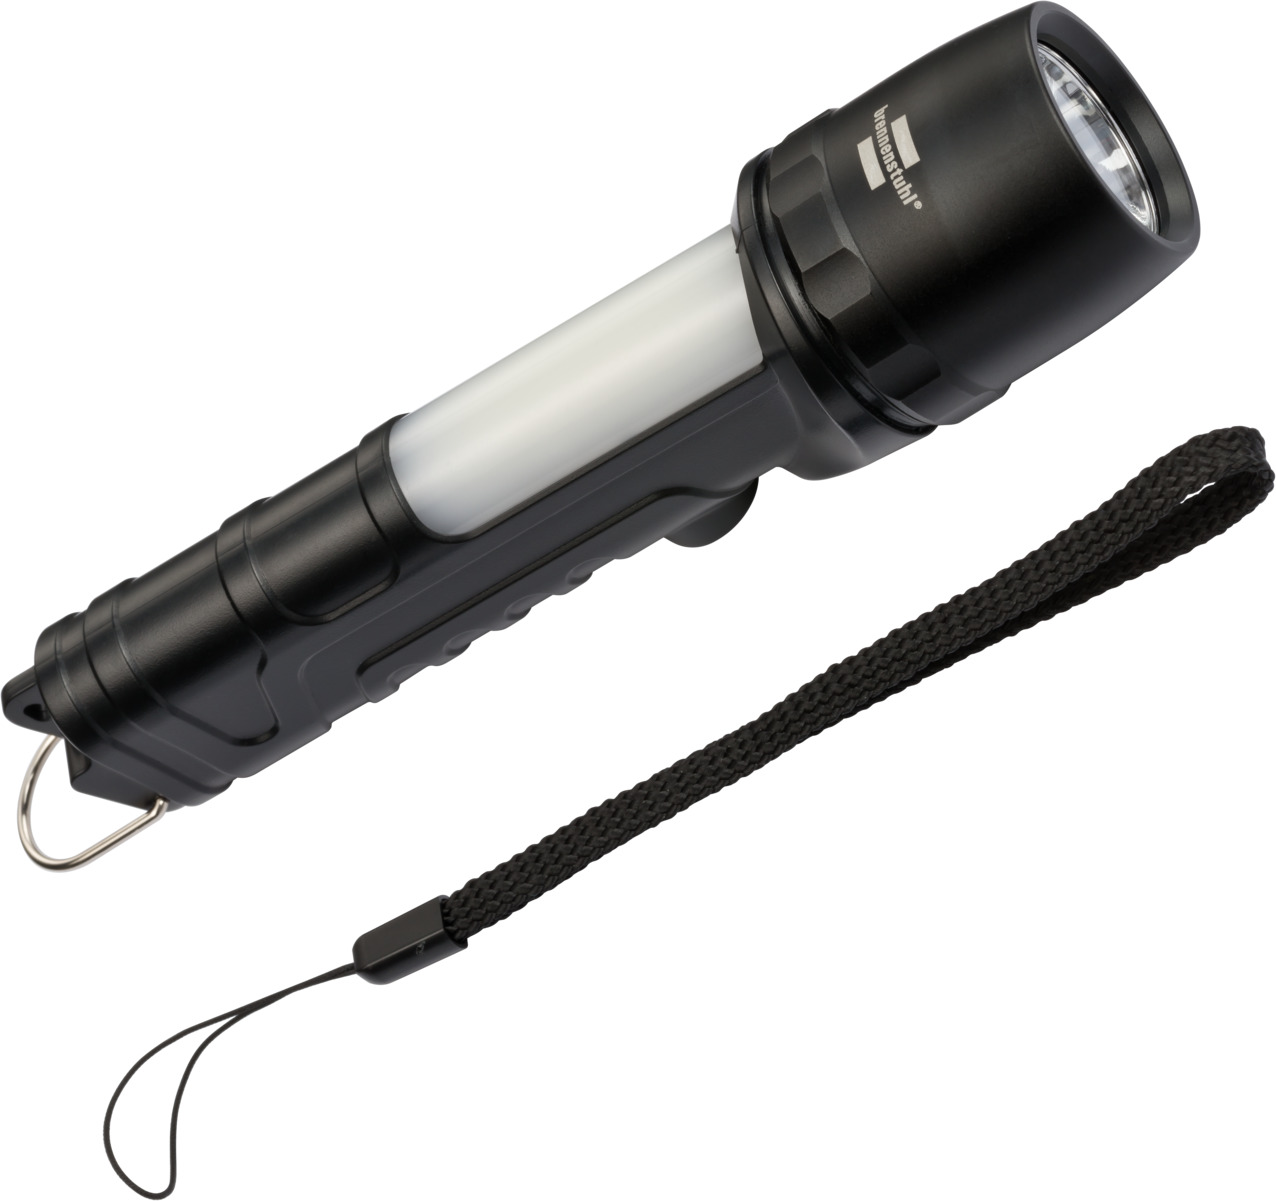 Lampe de poche LED LuxPremium Focus rechargeable TL 300 AF, 350lm  Brennenstuhl